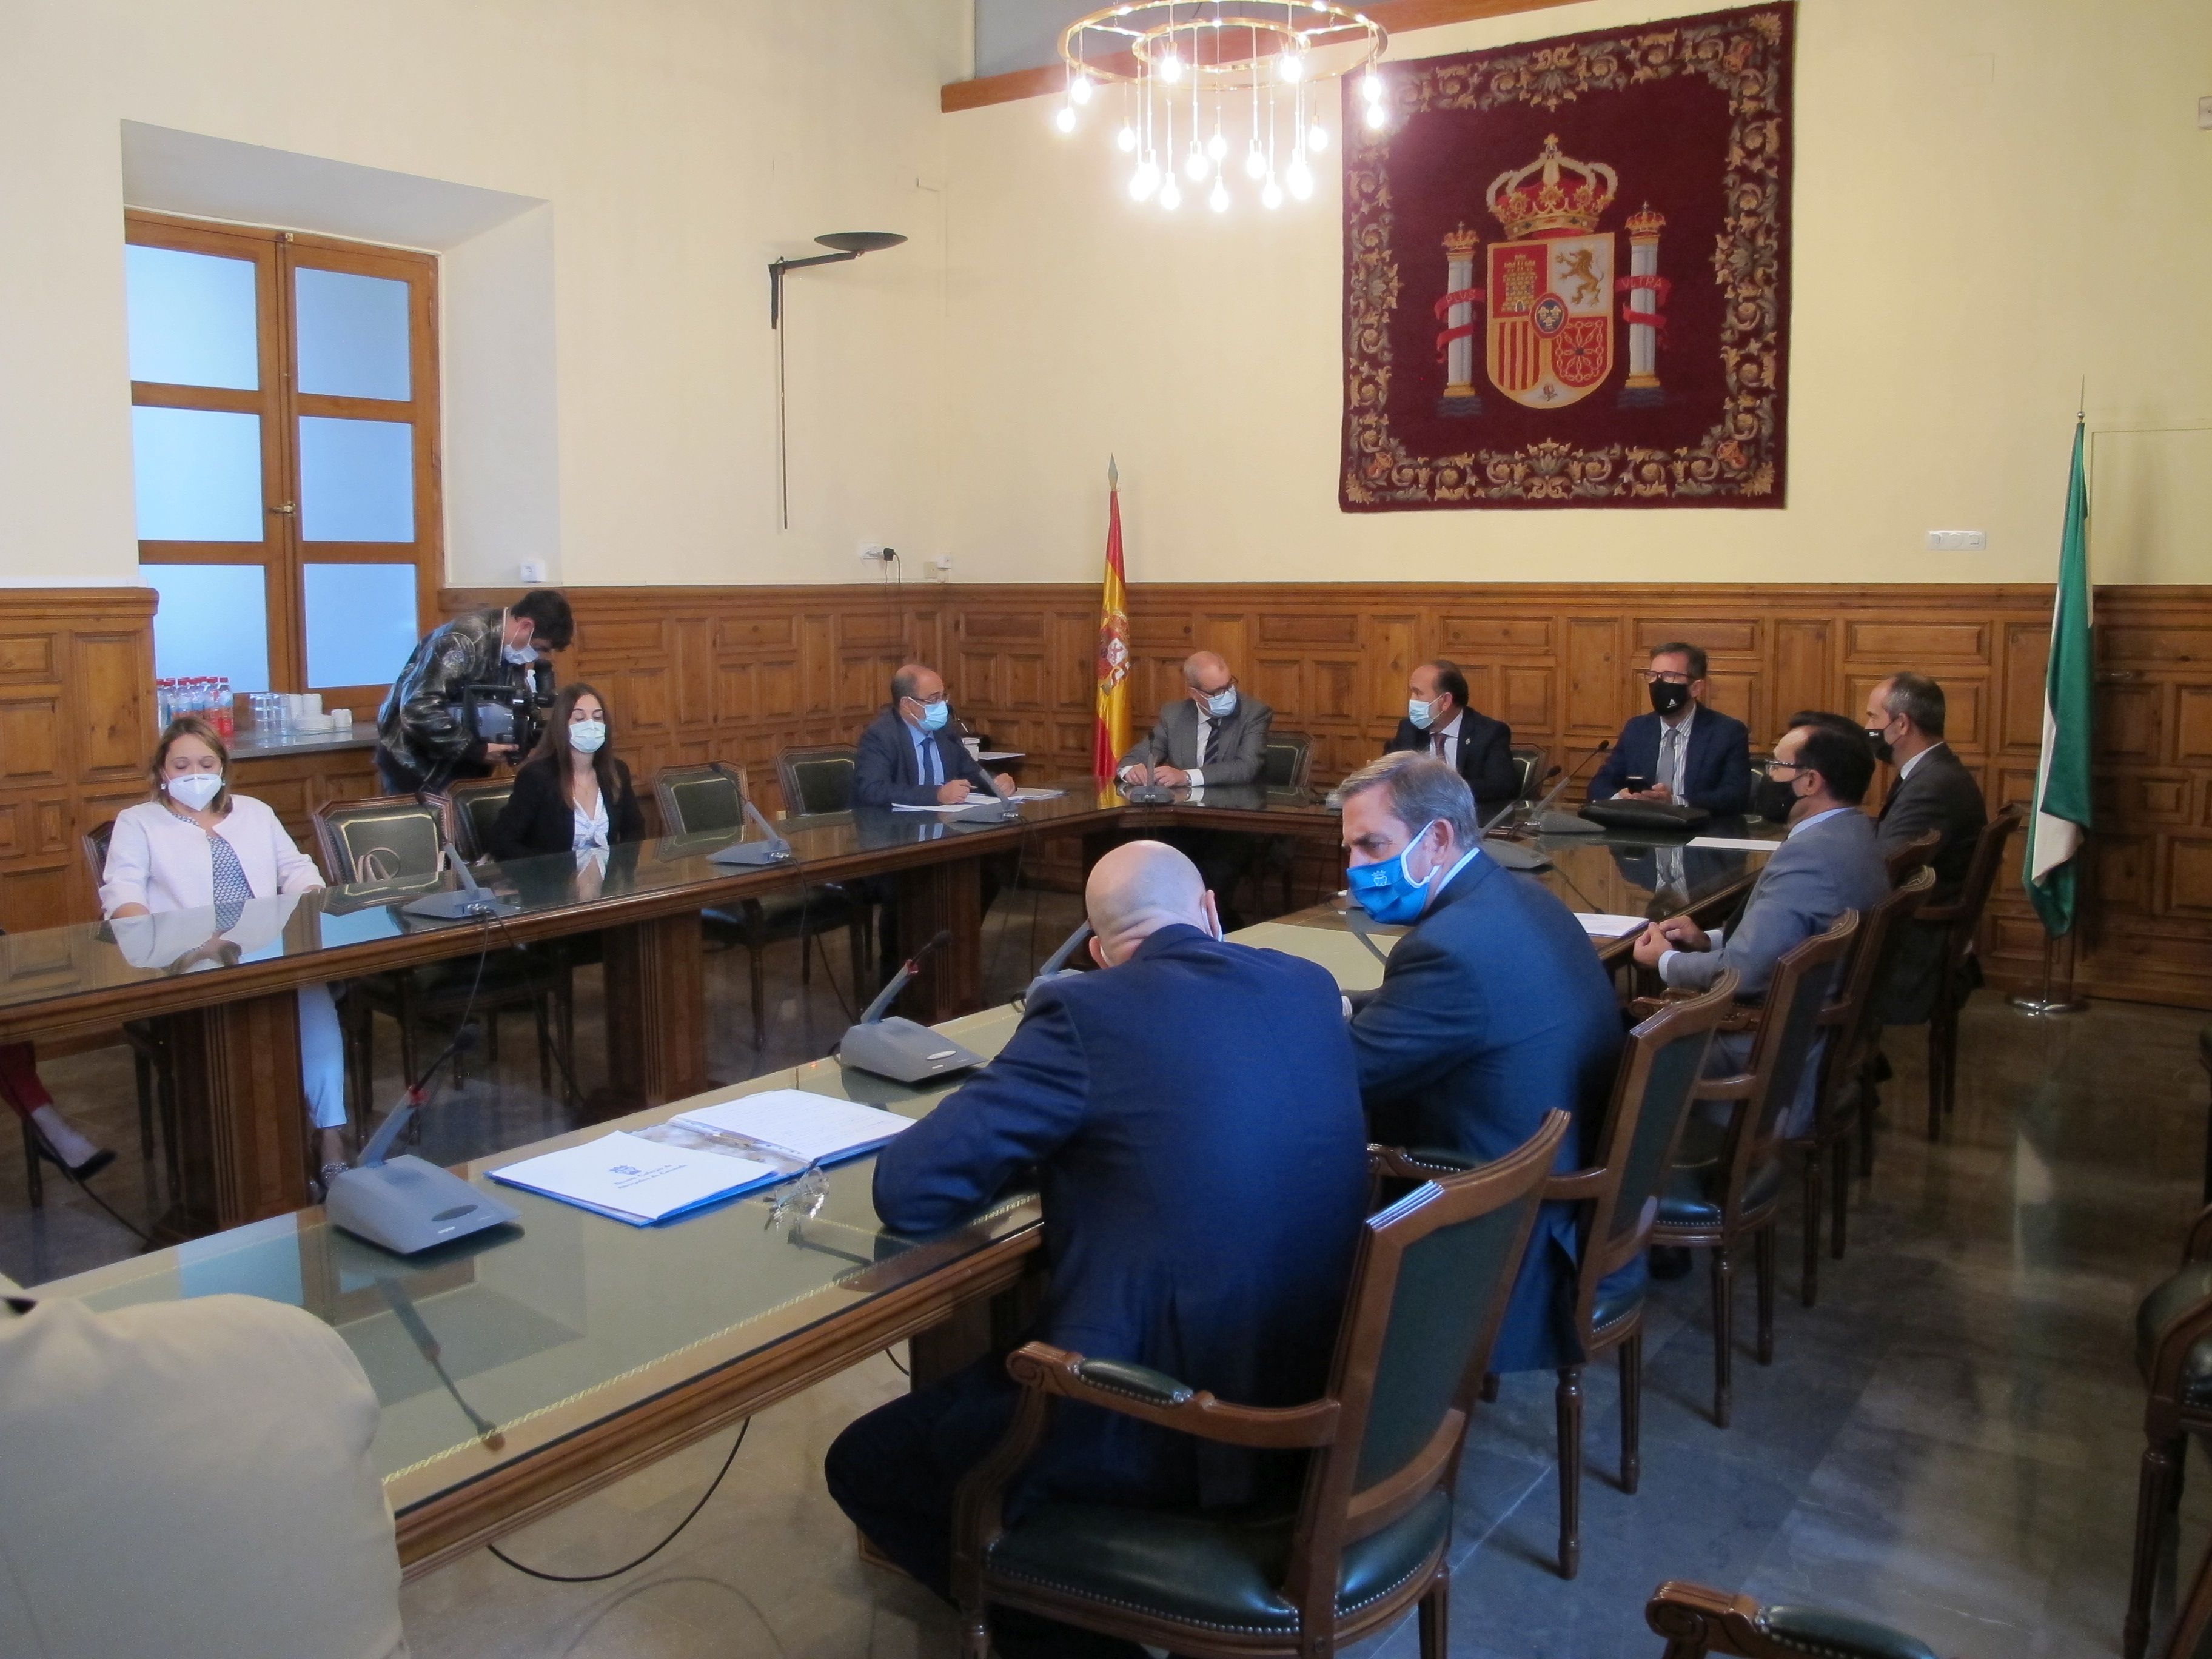 Justicia creará un nuevo juzgado de los Mercantil en Granada